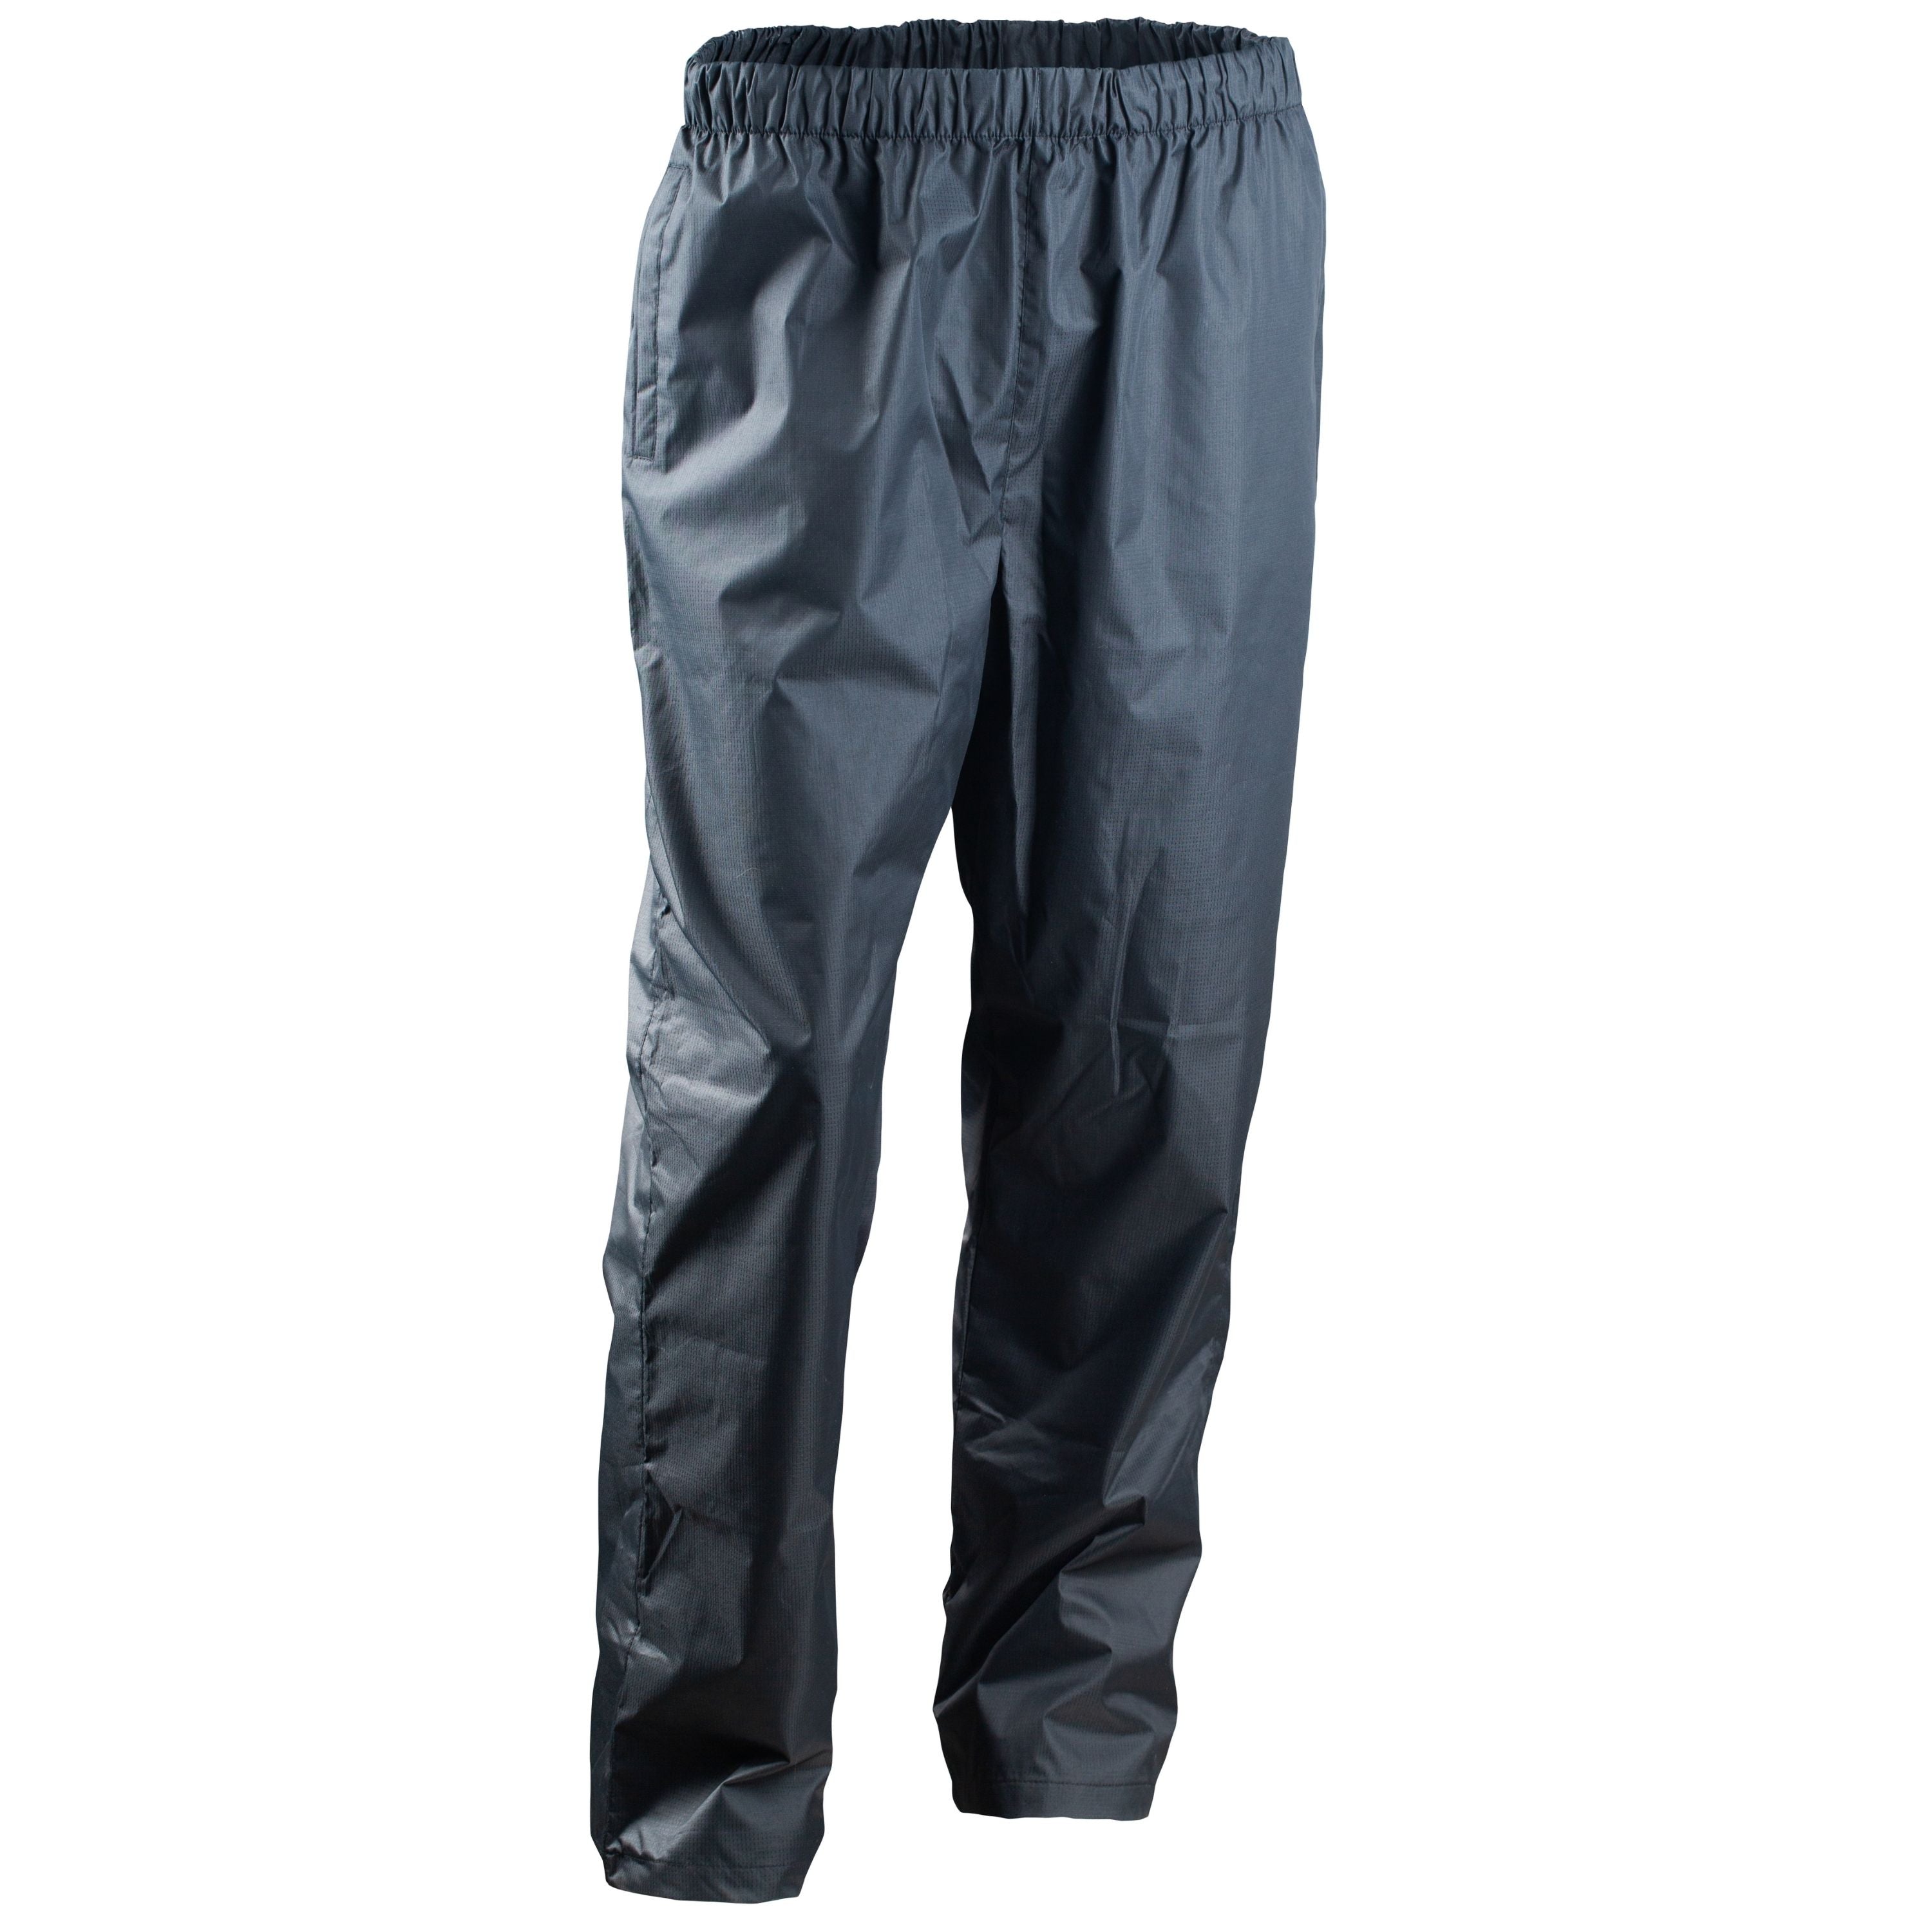 Pantalon en nylon à filet "Dom"- Femme||"Dom" Nylon mesh pants - Women's